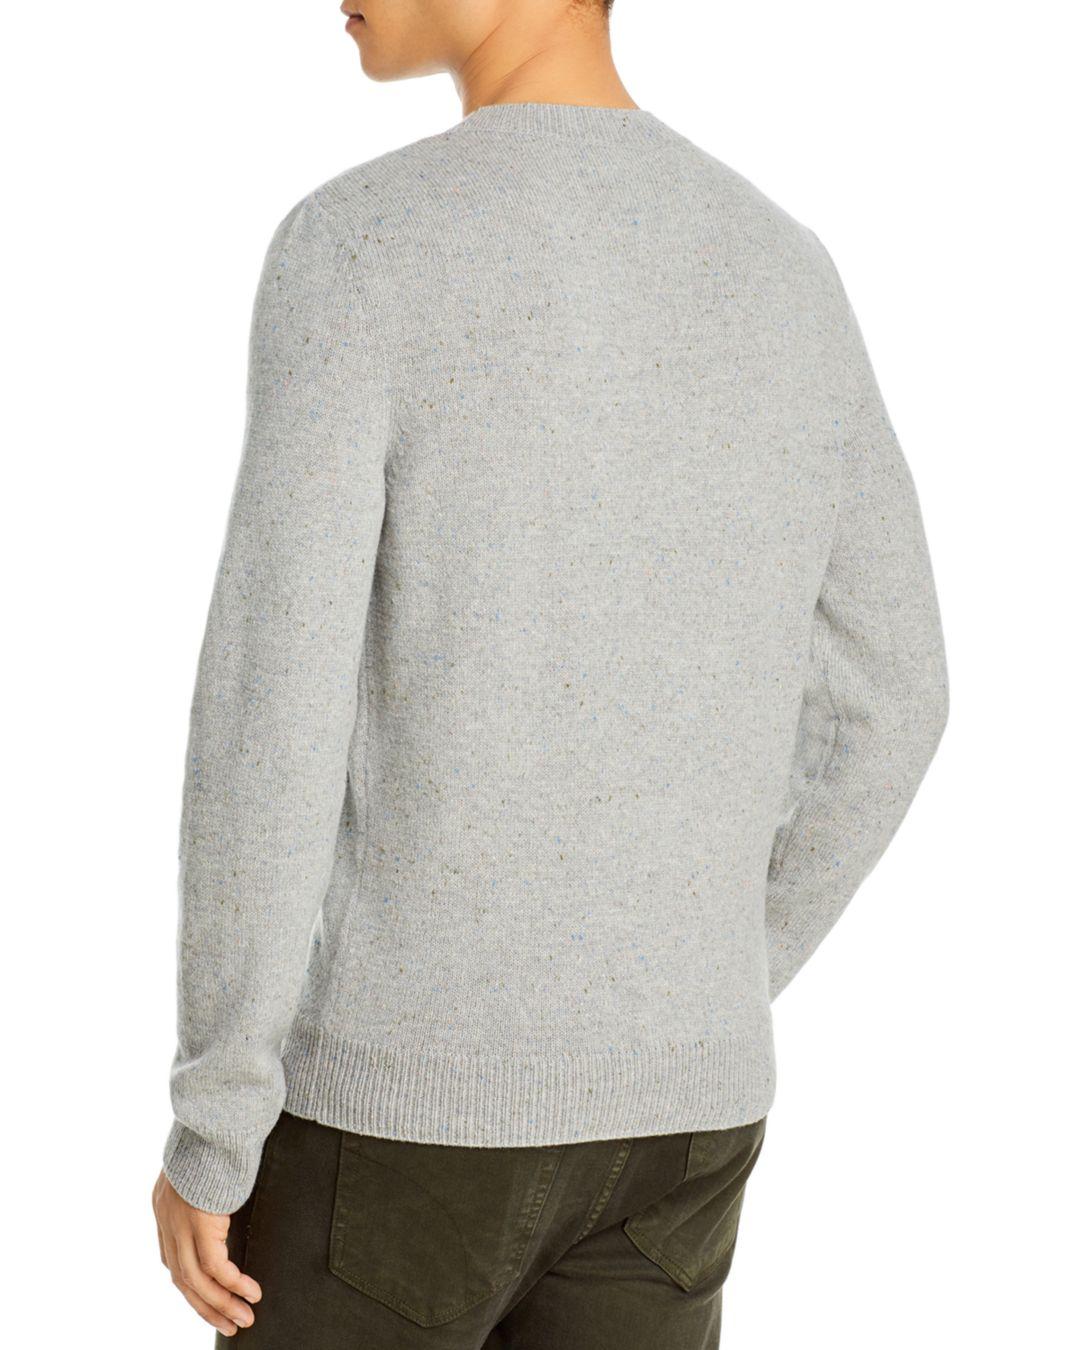 A.P.C. Tweed Cavan Sweater in Gray for Men - Lyst